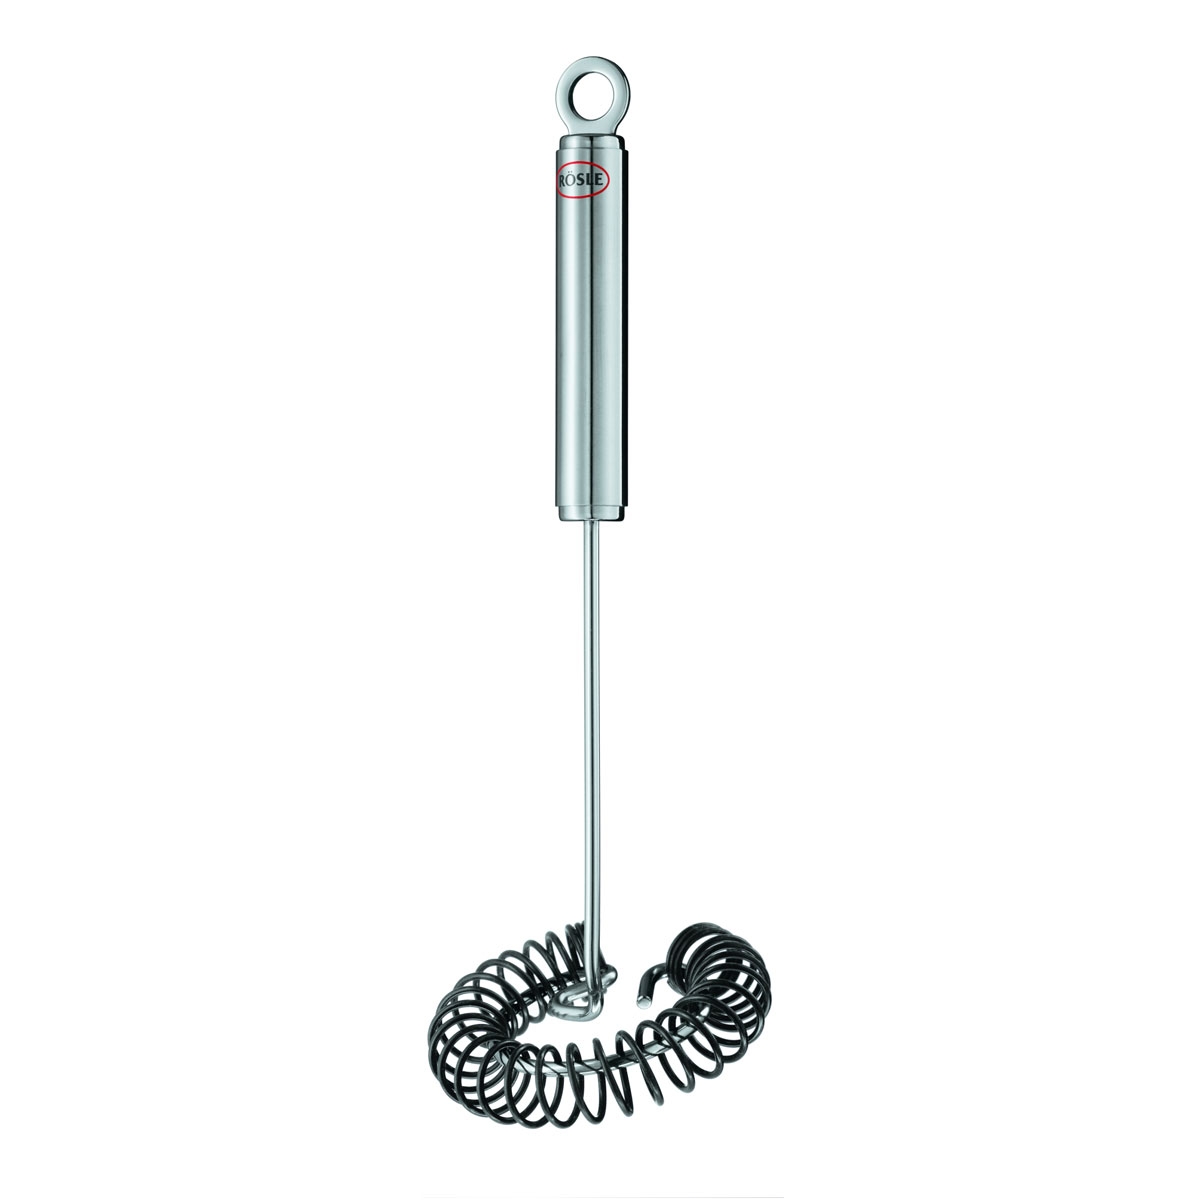 Rösle Spiralbesen 27 cm mit Rundgriff - Edelstahl mit Silikonüberzug